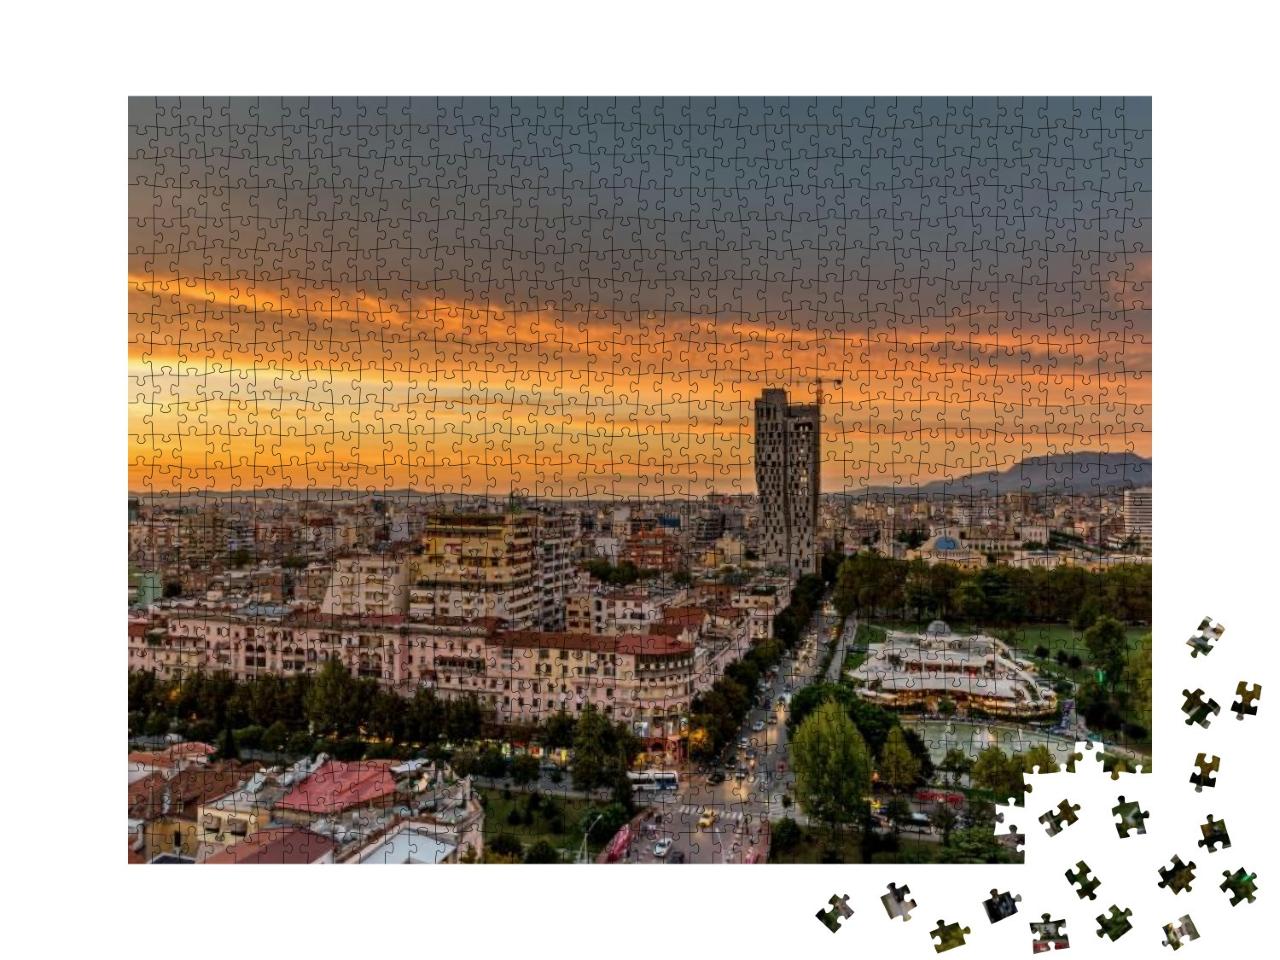 Puzzle 1000 Teile „Fantastischer Sonnenuntergang über Tirana, Hauptstadt von Albanien“